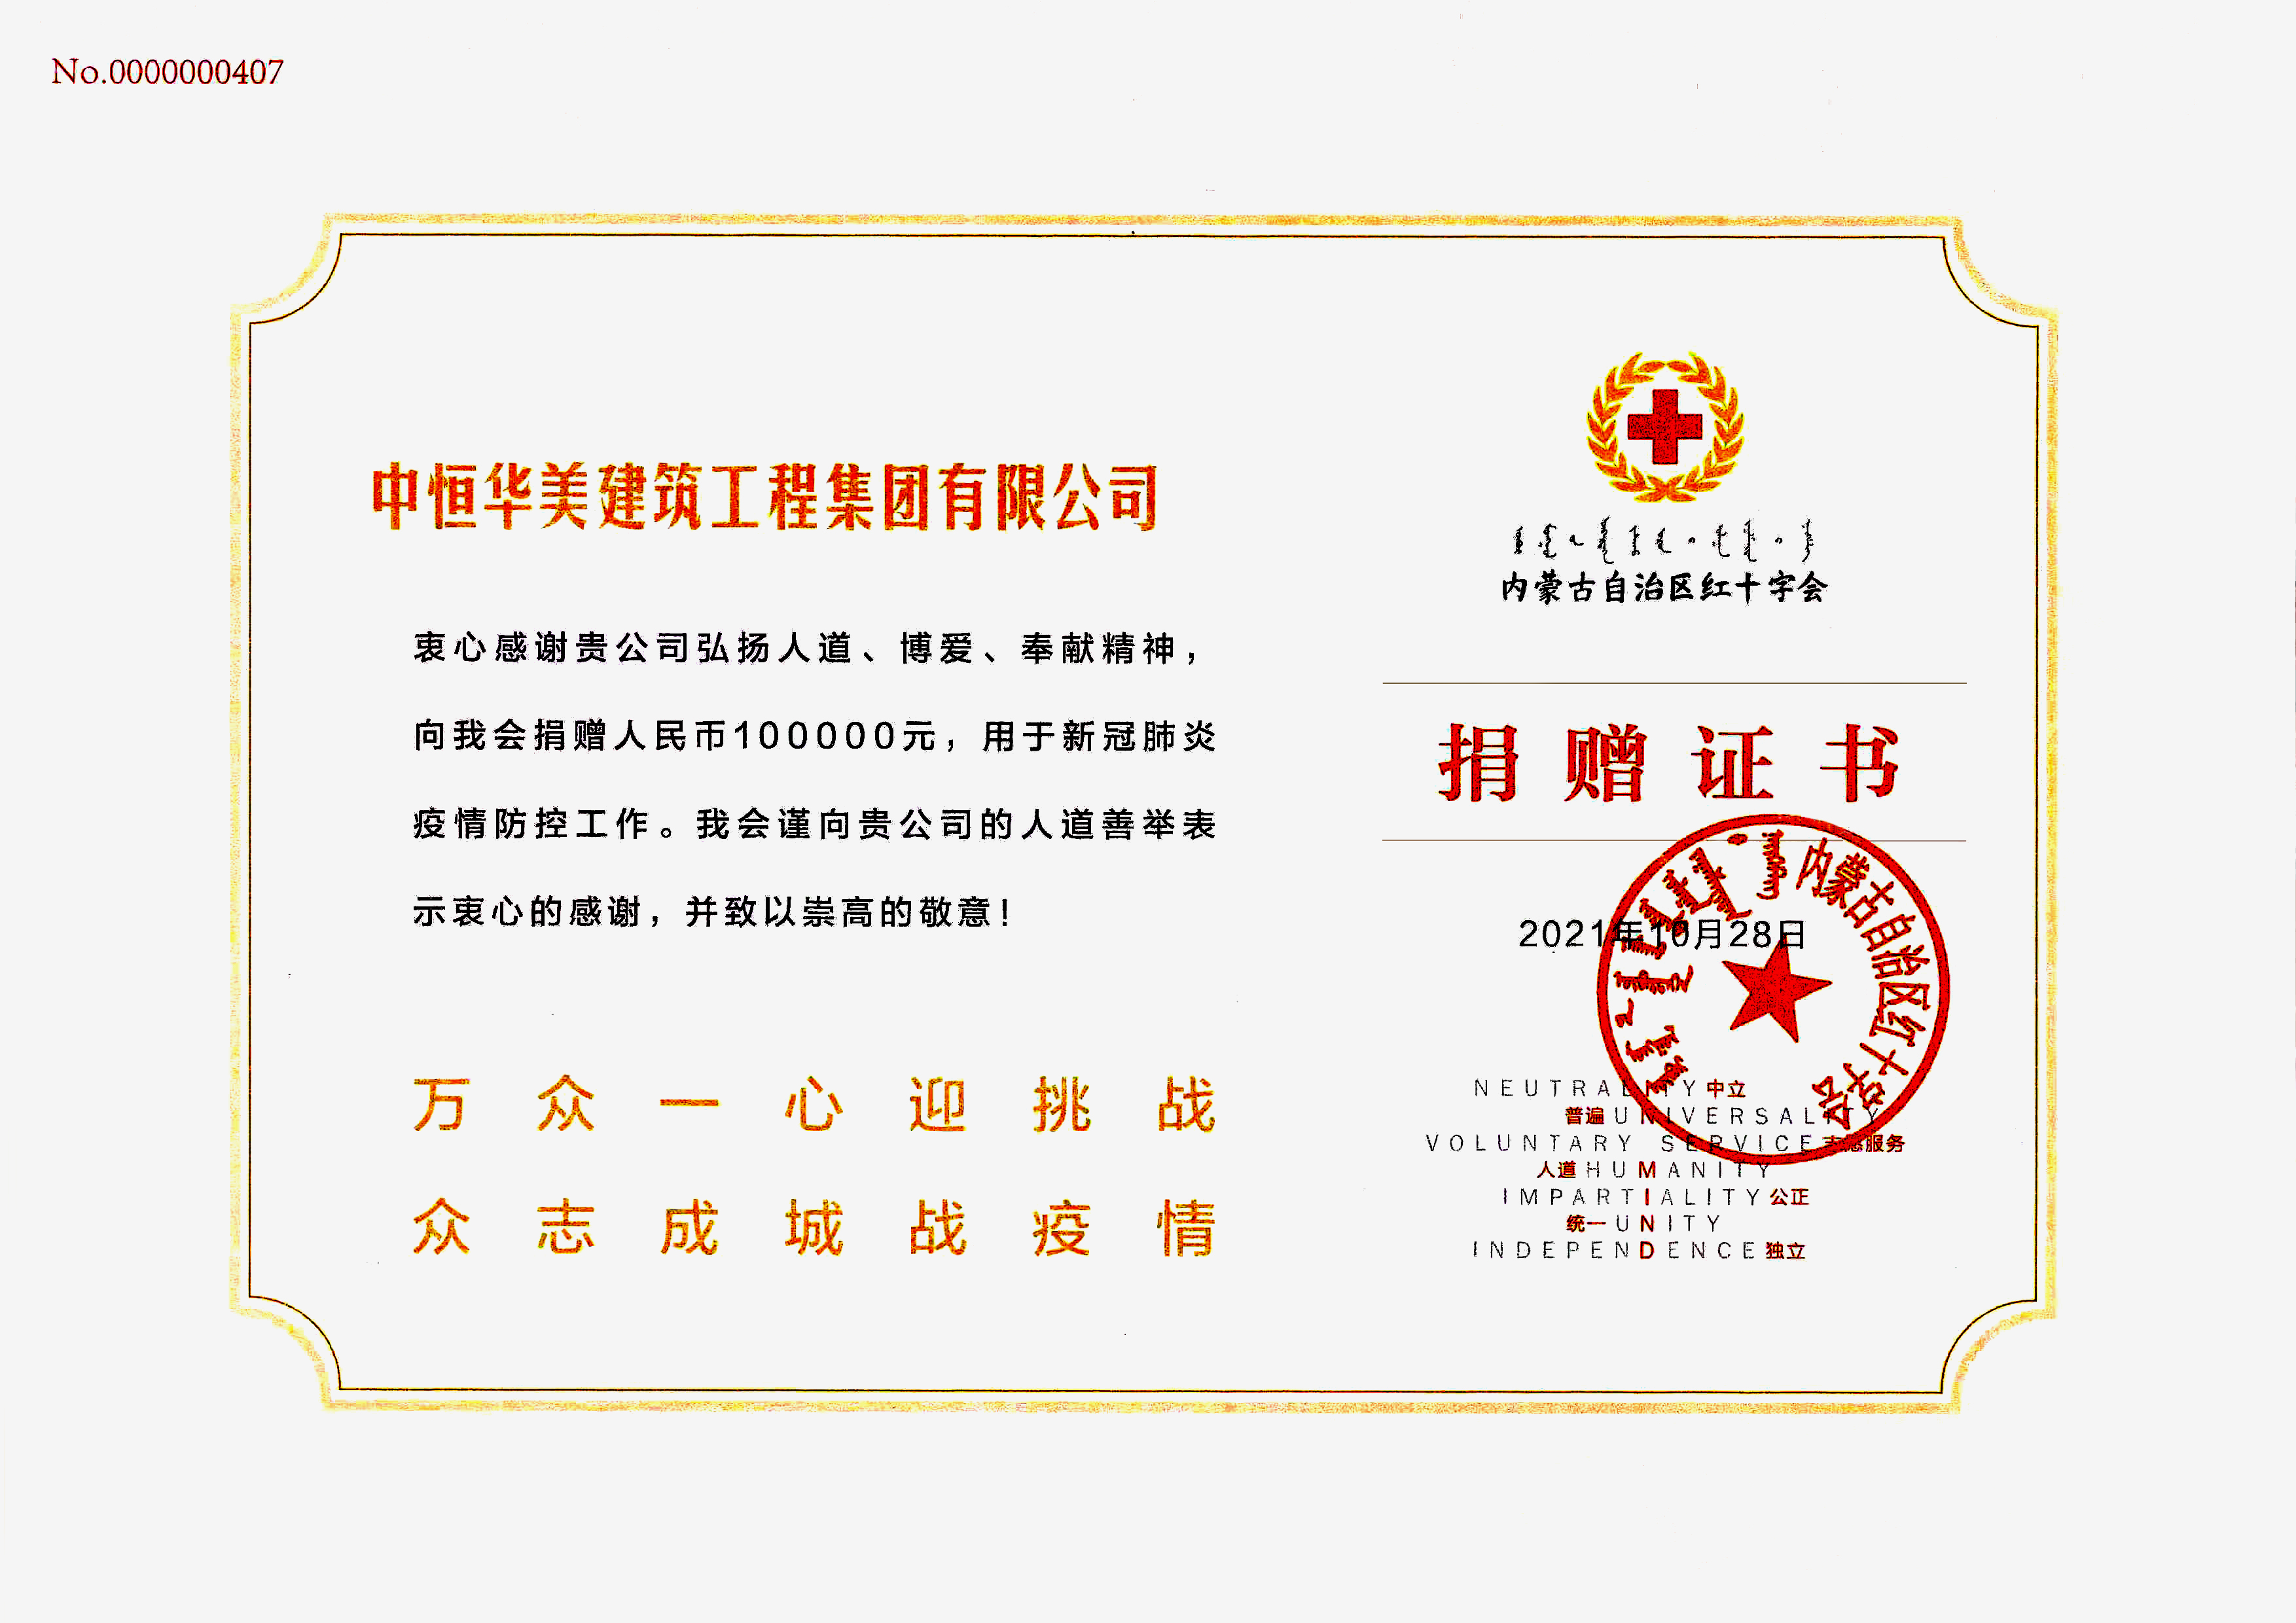 内蒙古自治区红十字会捐赠赠书.jpg